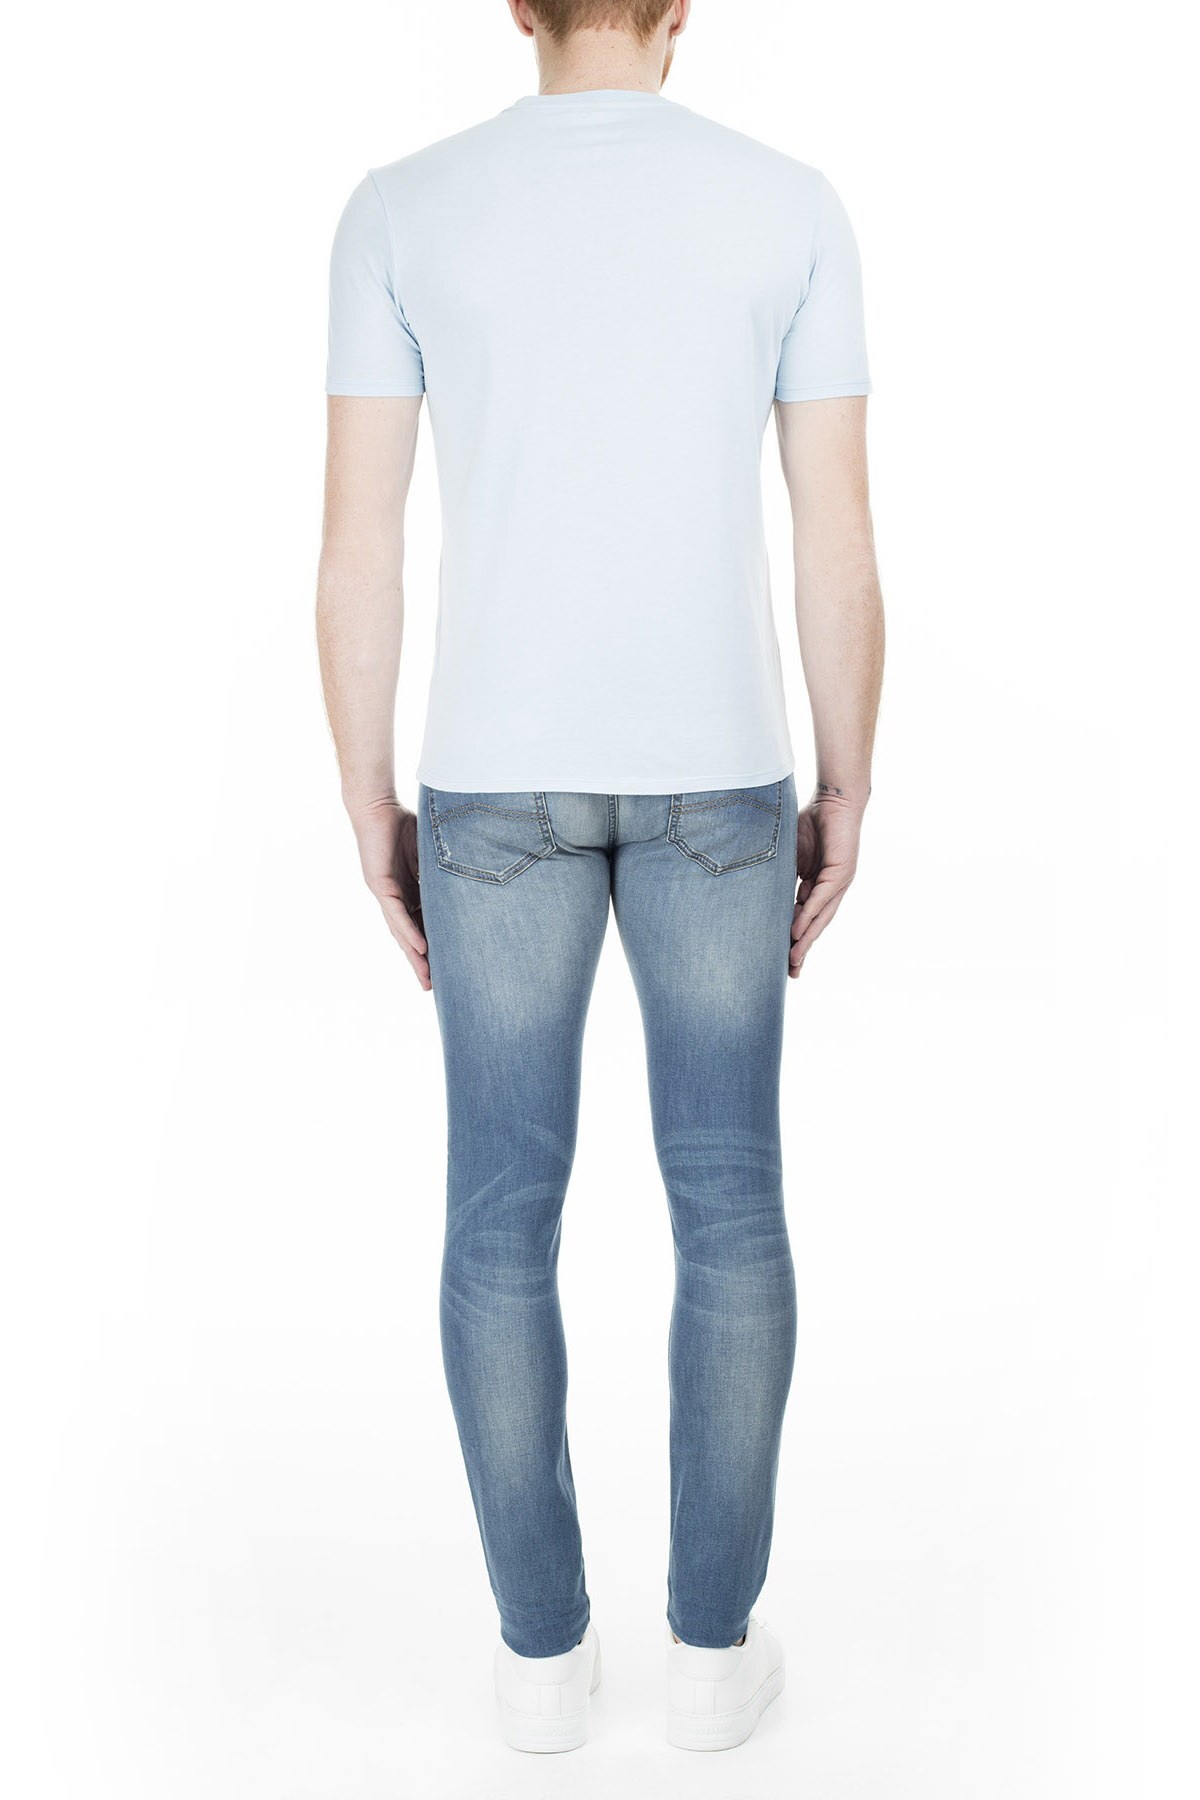 Armani Jeans Erkek Kot Pantolon 3Y6960 6D2CZ 1500 MAVİ